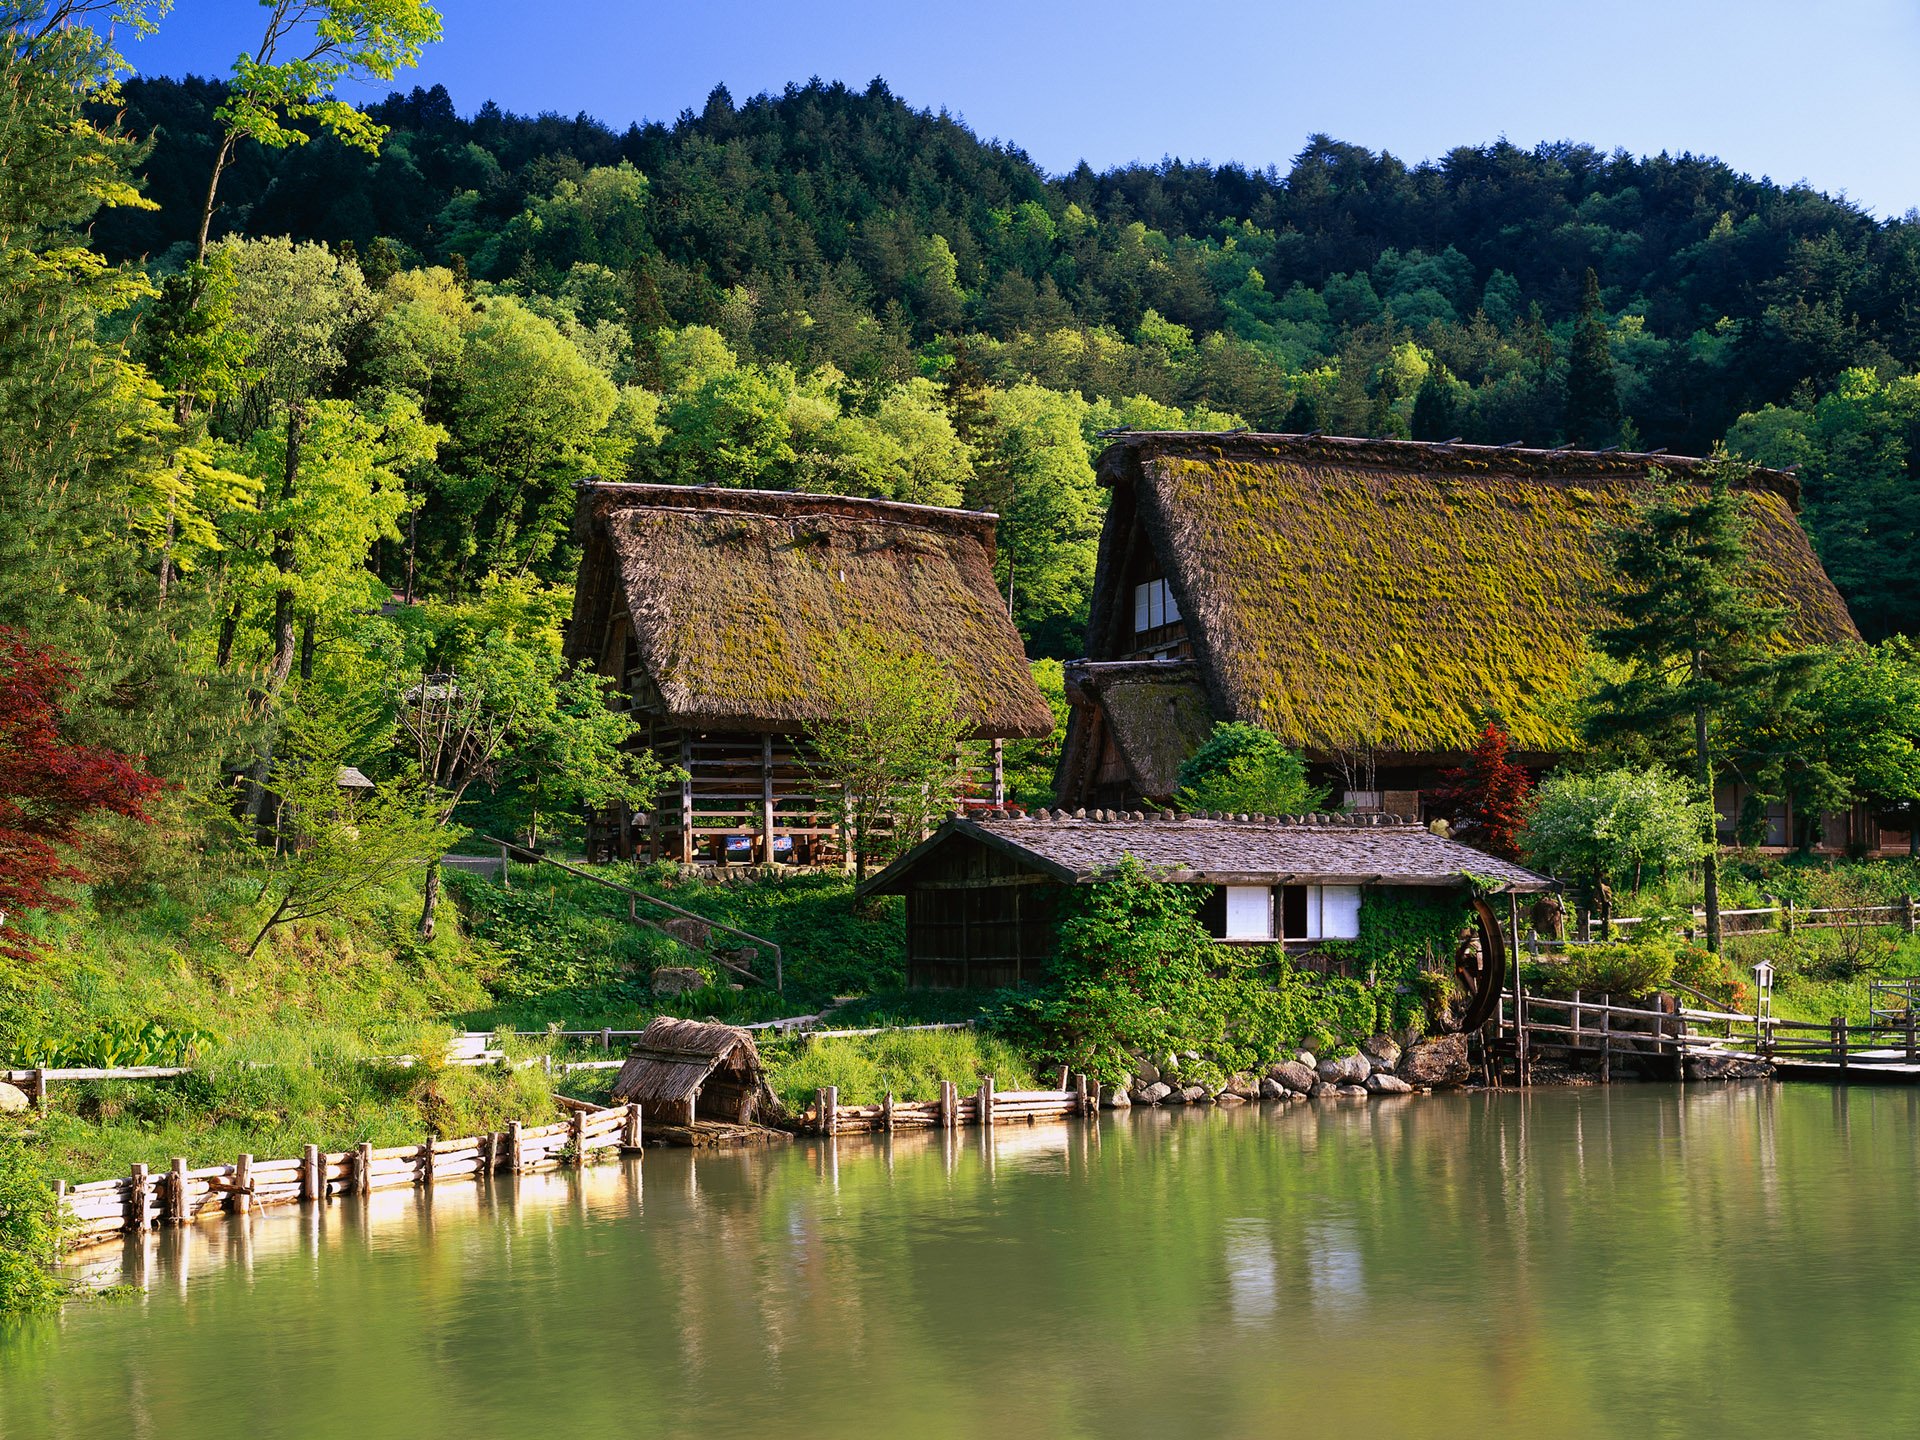 anianla in japan scenery